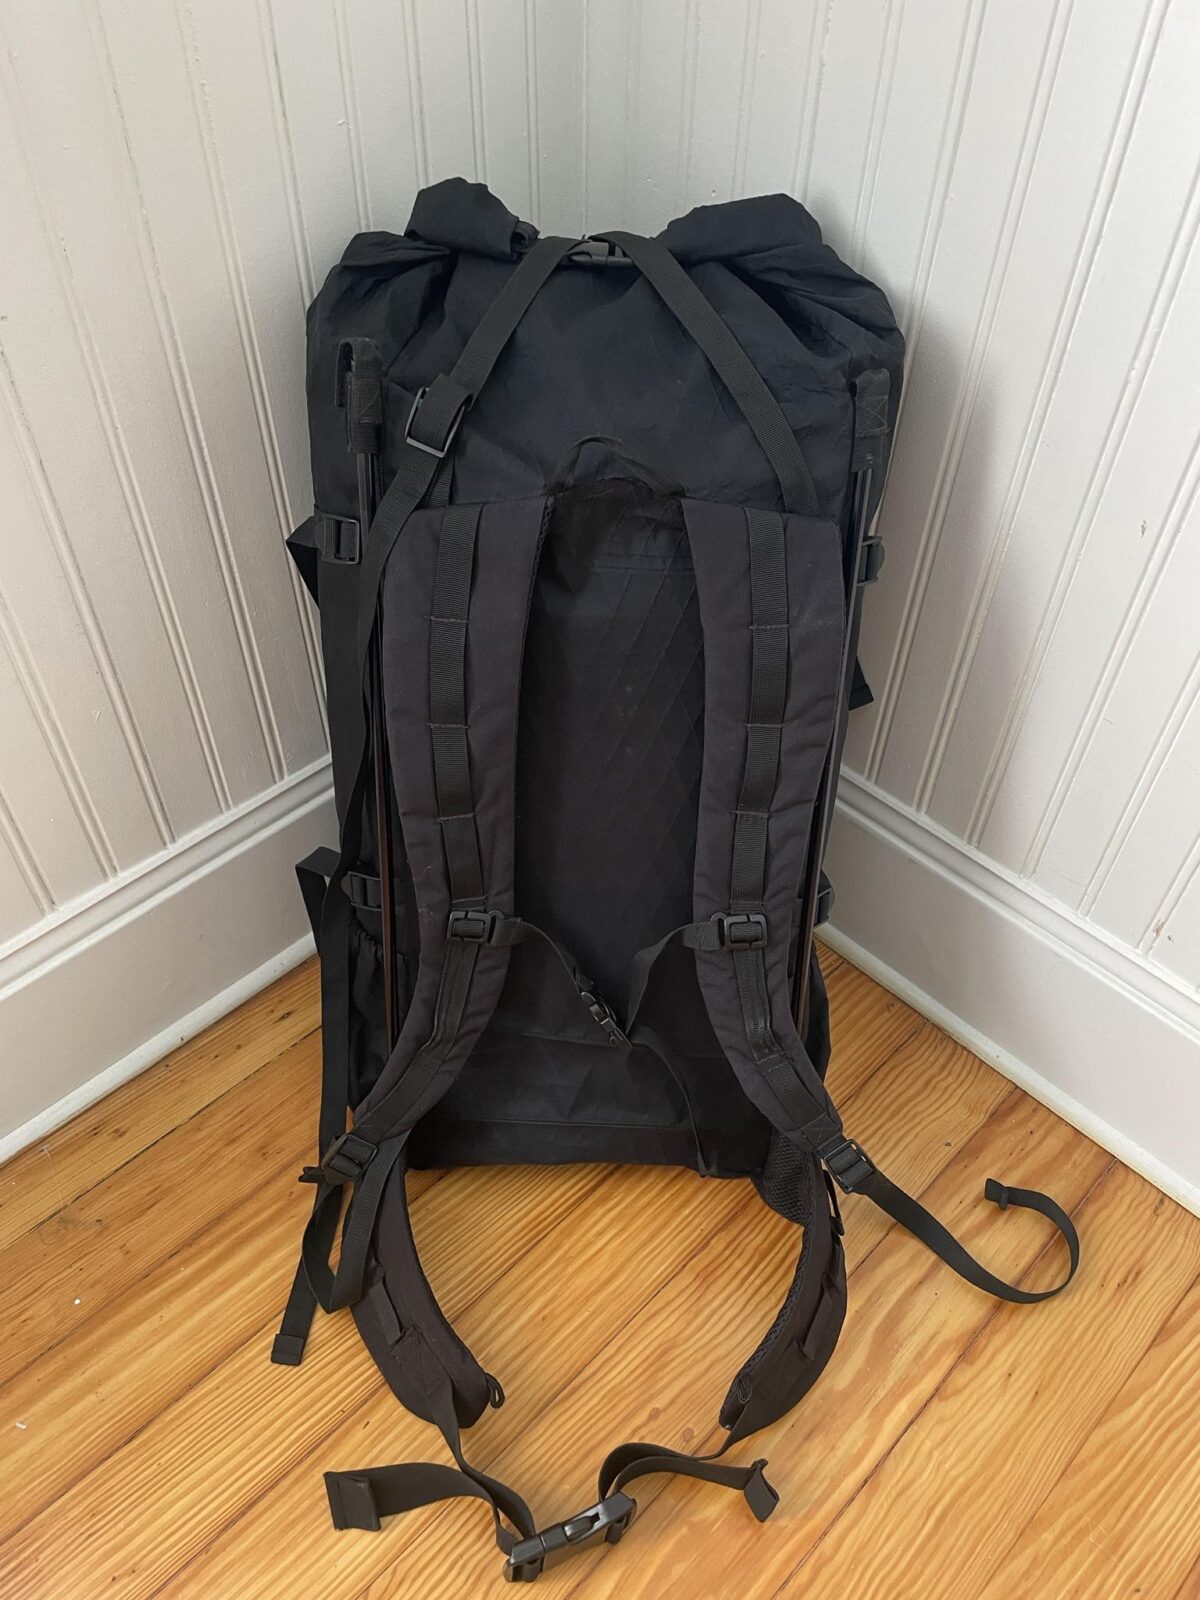 FS: KS Ultralight R50 pack - Backpacking Light